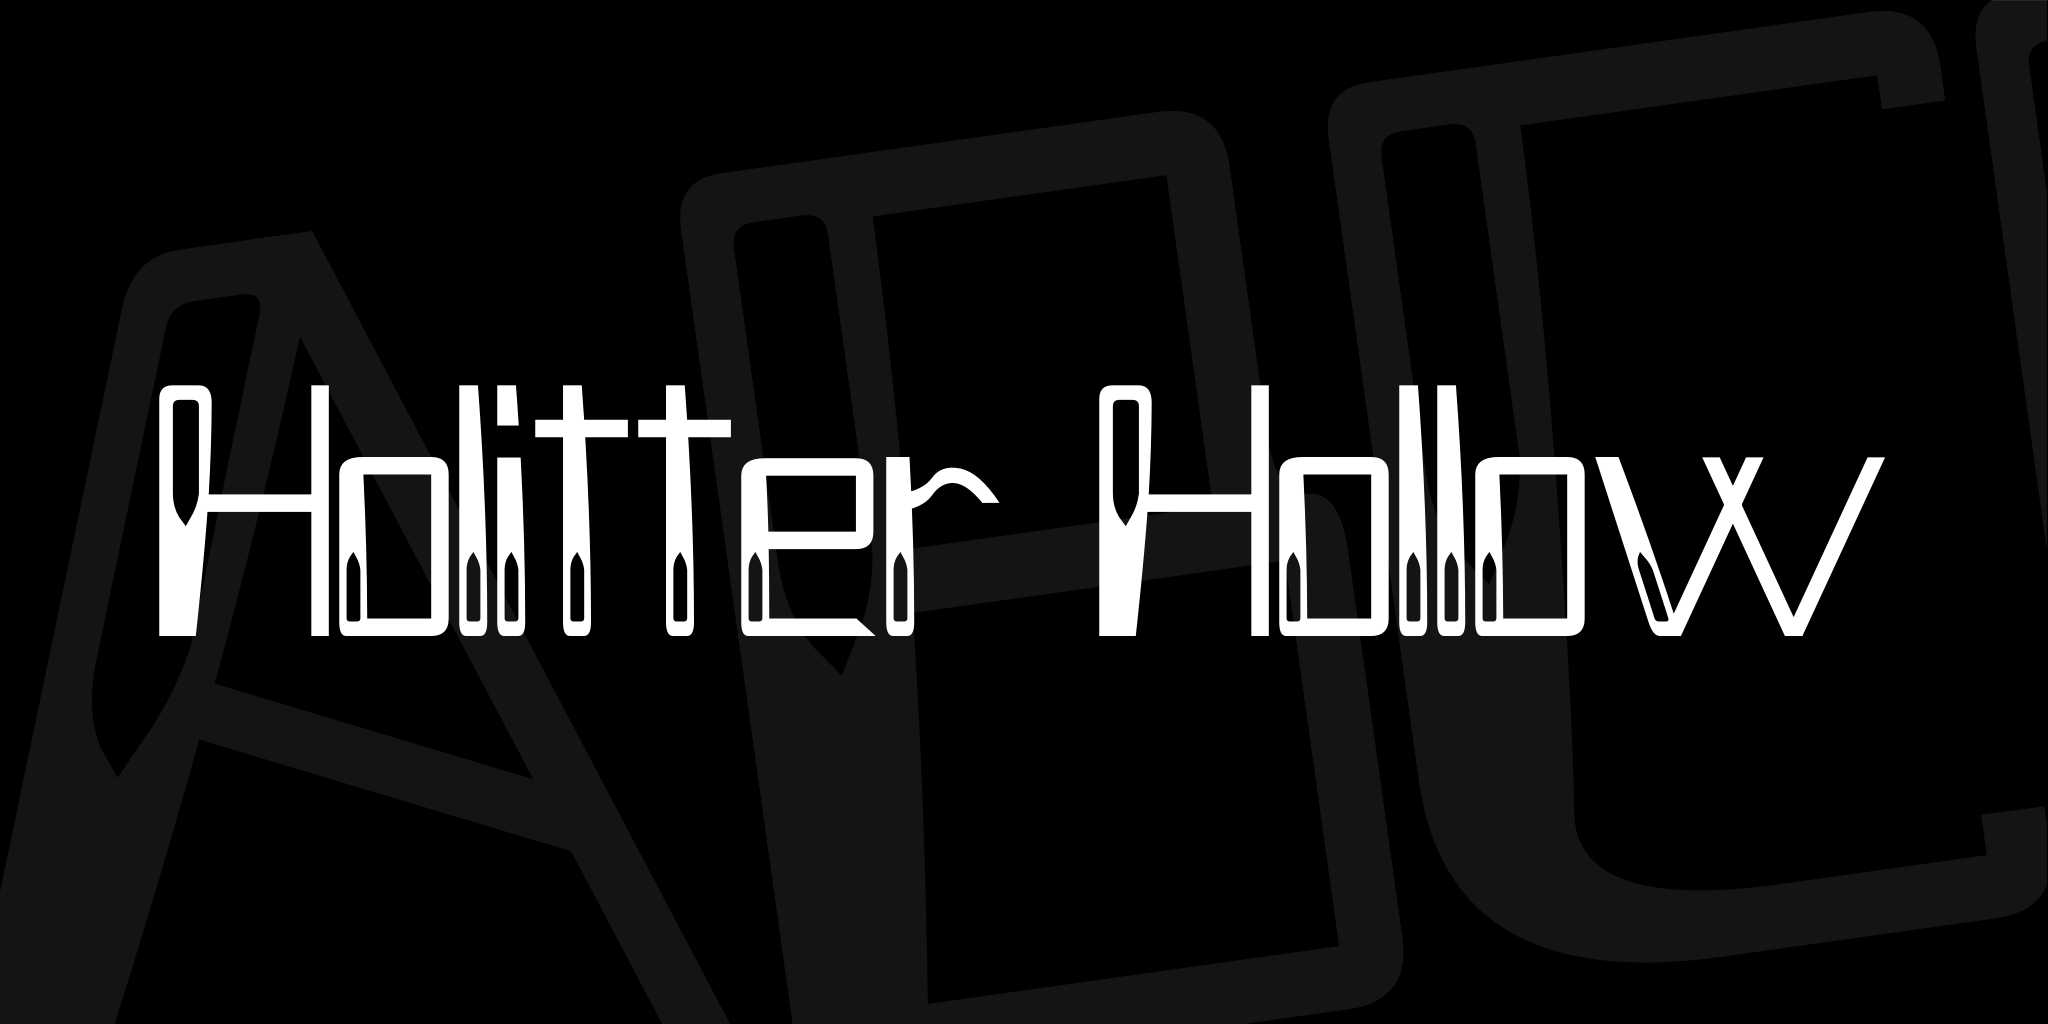 Holitter Hollow